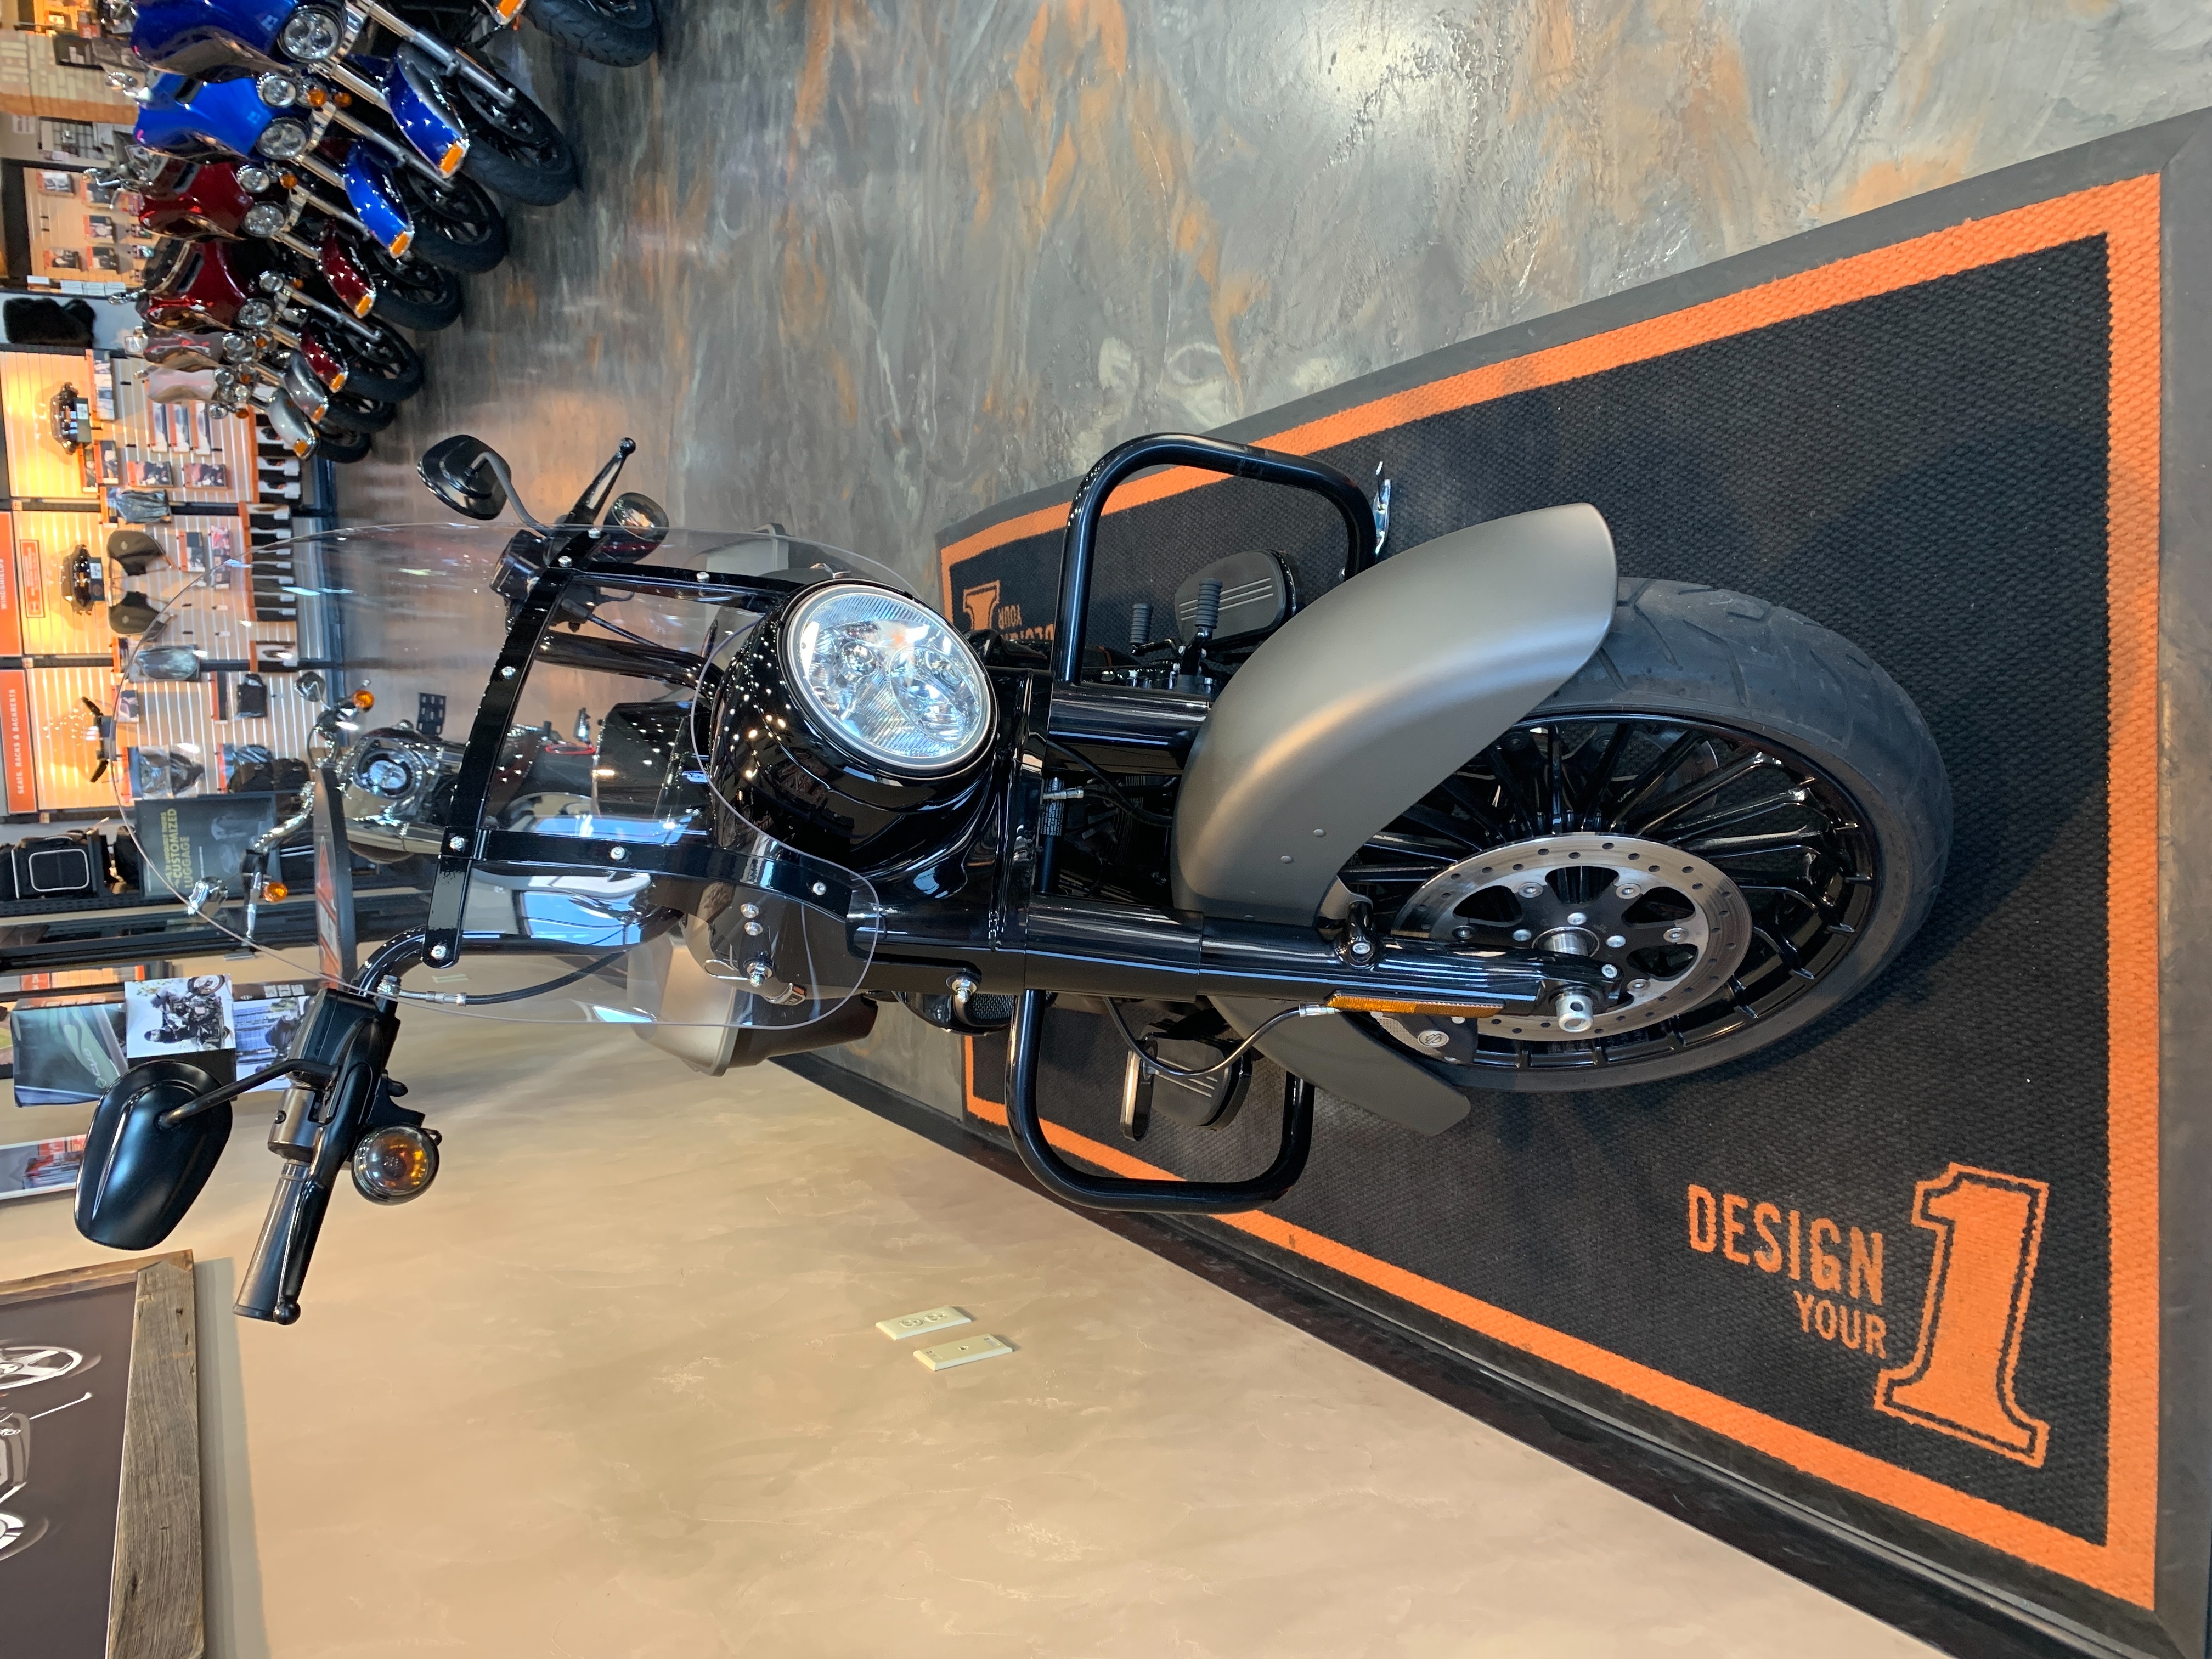 2018 Harley-Davidson Road King Special at Vandervest Harley-Davidson, Green Bay, WI 54303